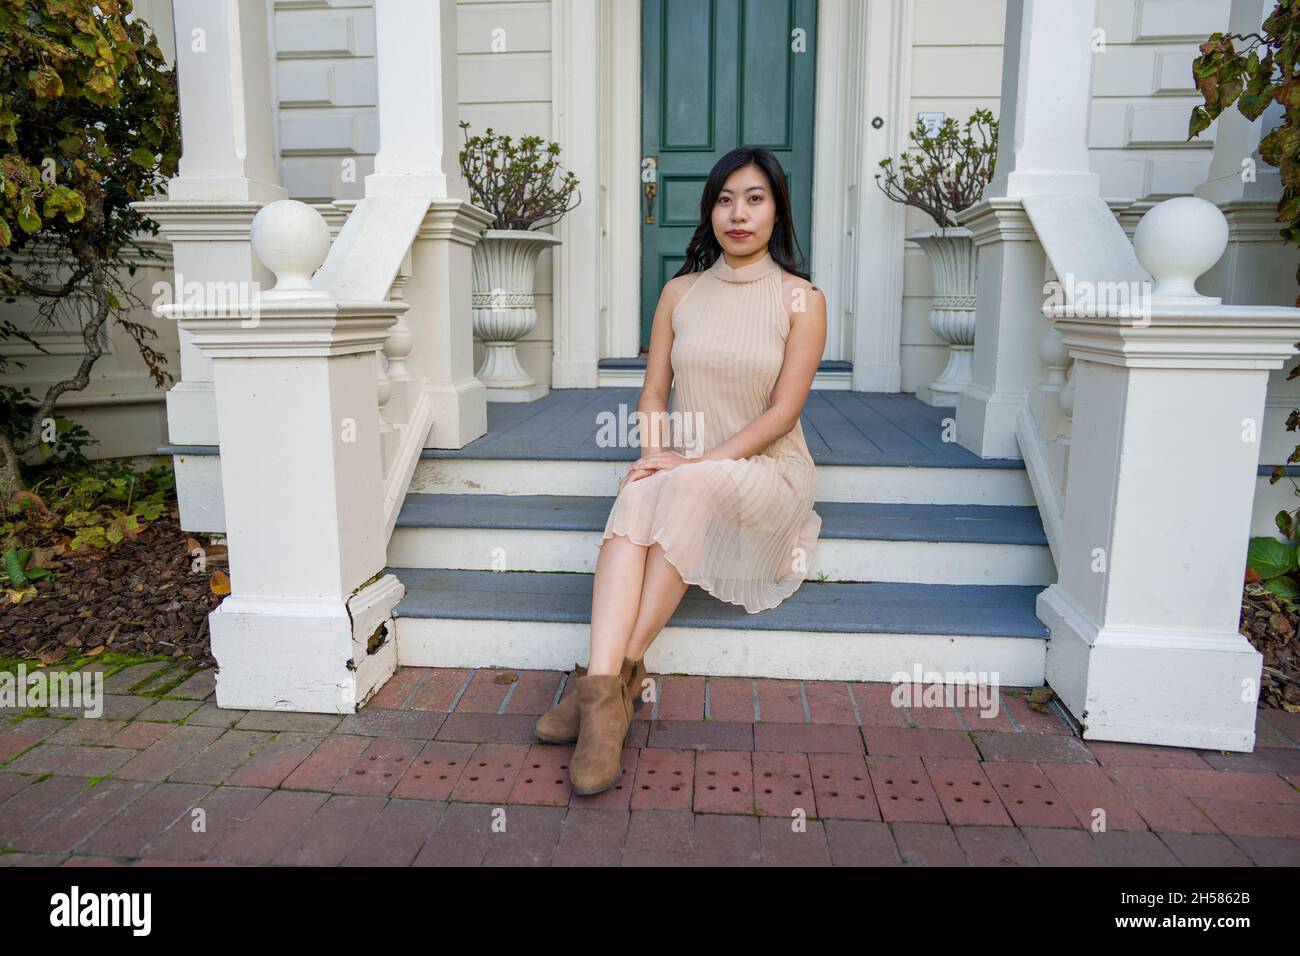 Junge asiatische Frau in einem historischen viktorianischen Haus und Garten Stockfoto